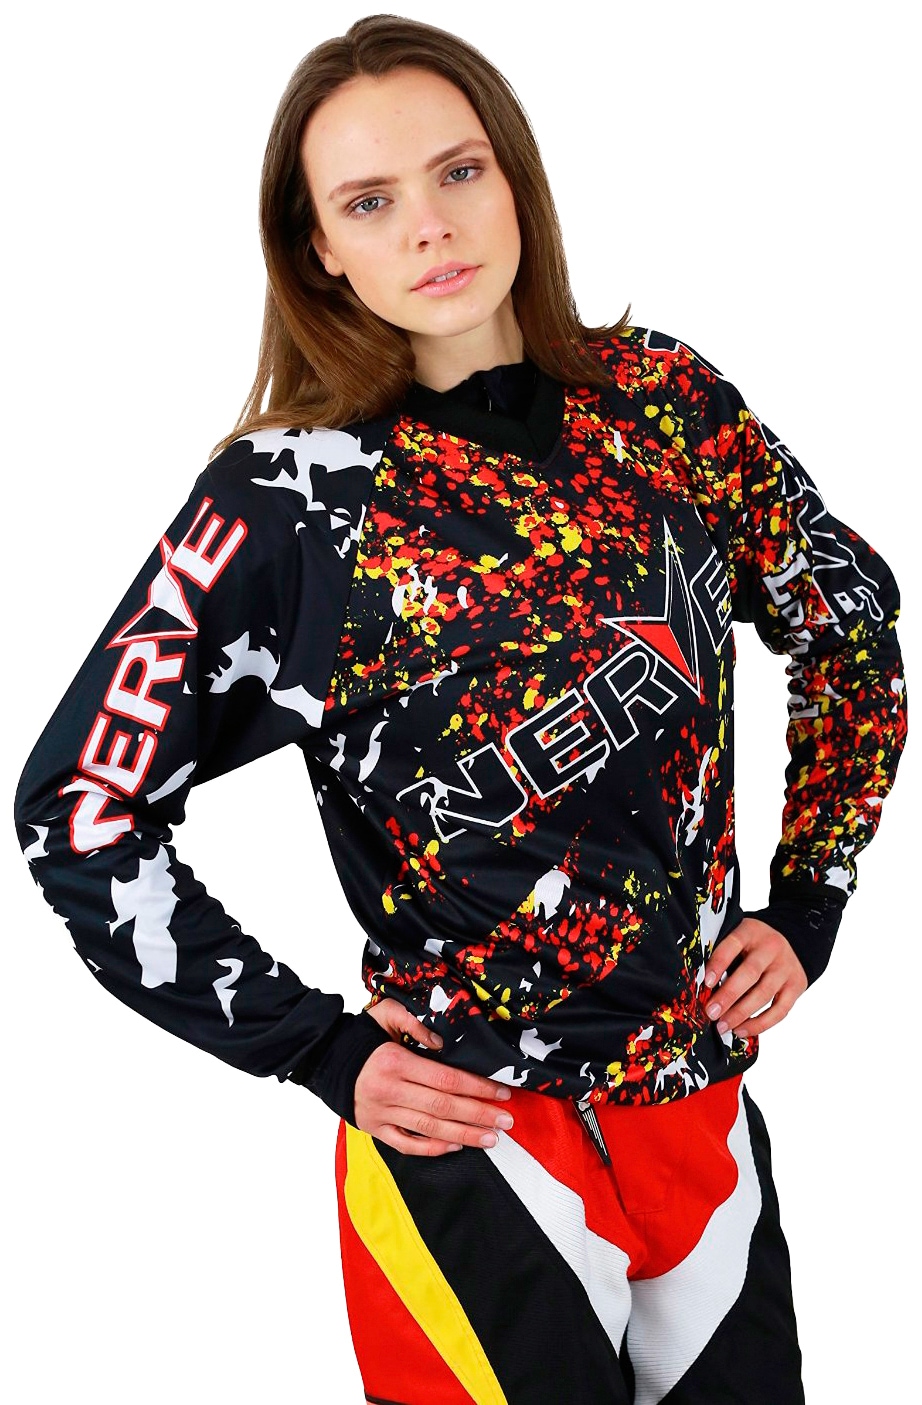 NERVE Motocross-Shirt "Nerve"